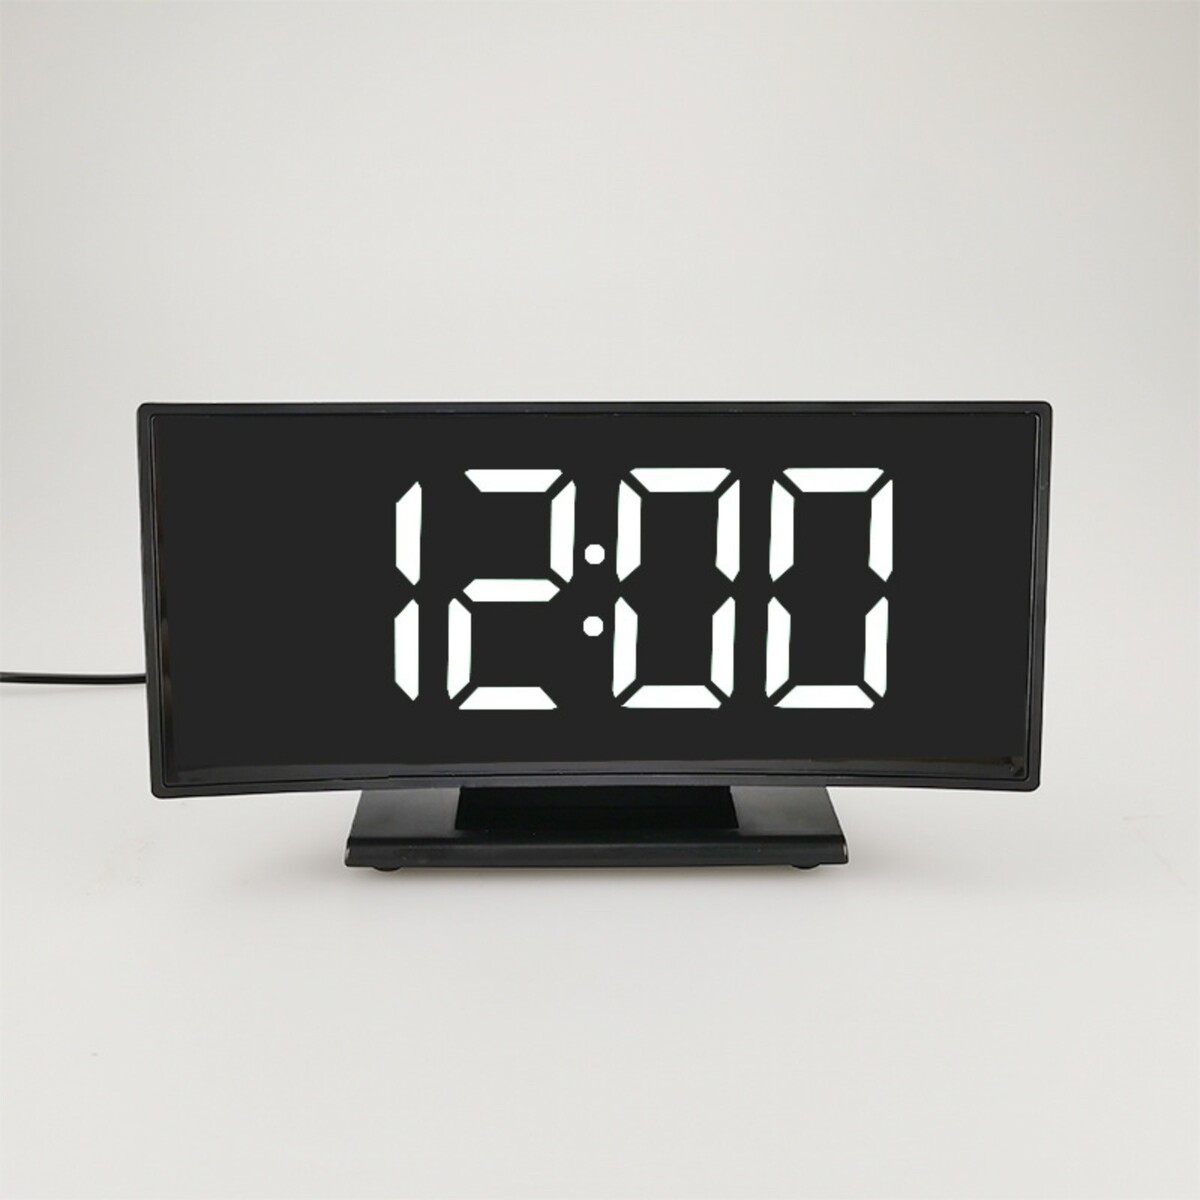 Часы - будильник электронные настольные с термометром, календарем, 17 х 9.5 см, 3ааа, usb часы будильник электронные настольные календарь термометр гигрометр 15 5 х 9 5см 3ааа